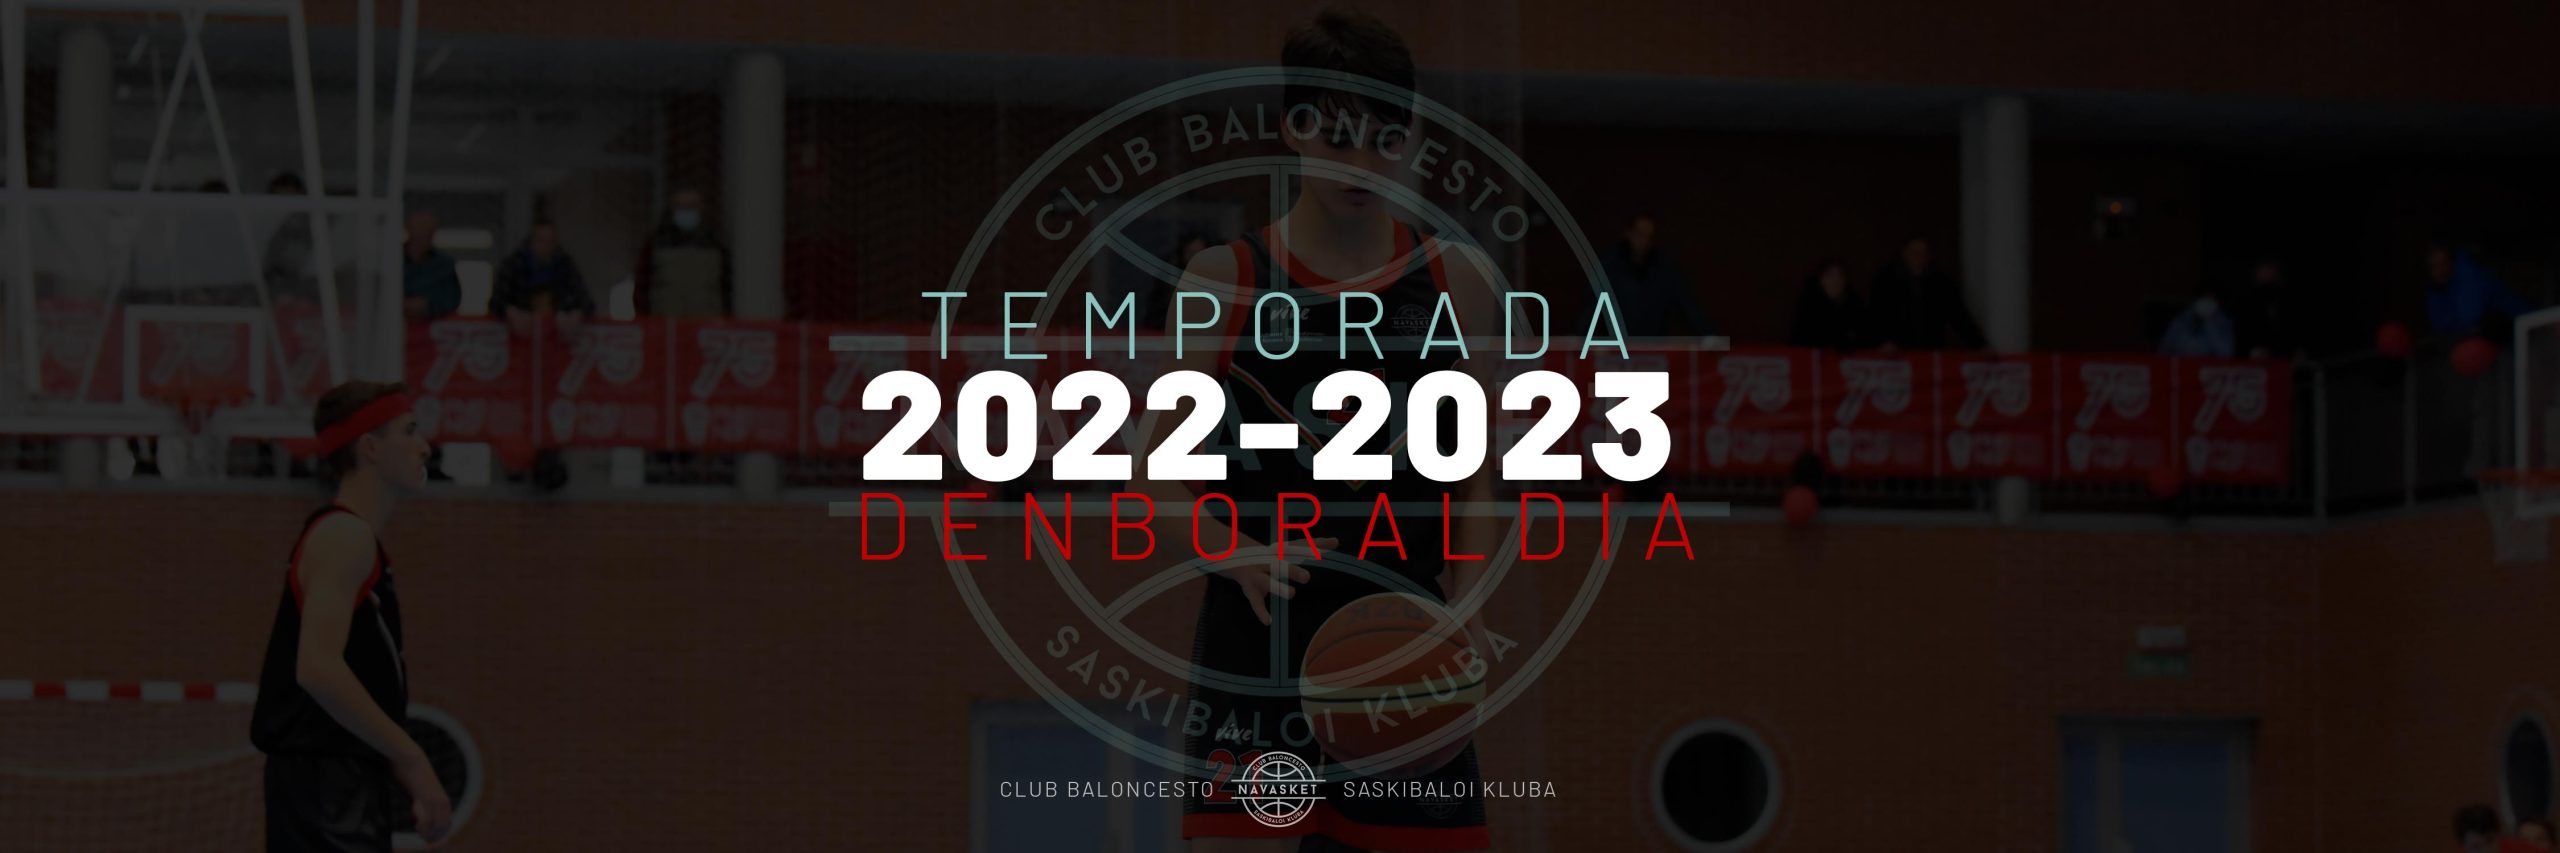 BANNER | Temporada 2022-2023 denboraldia